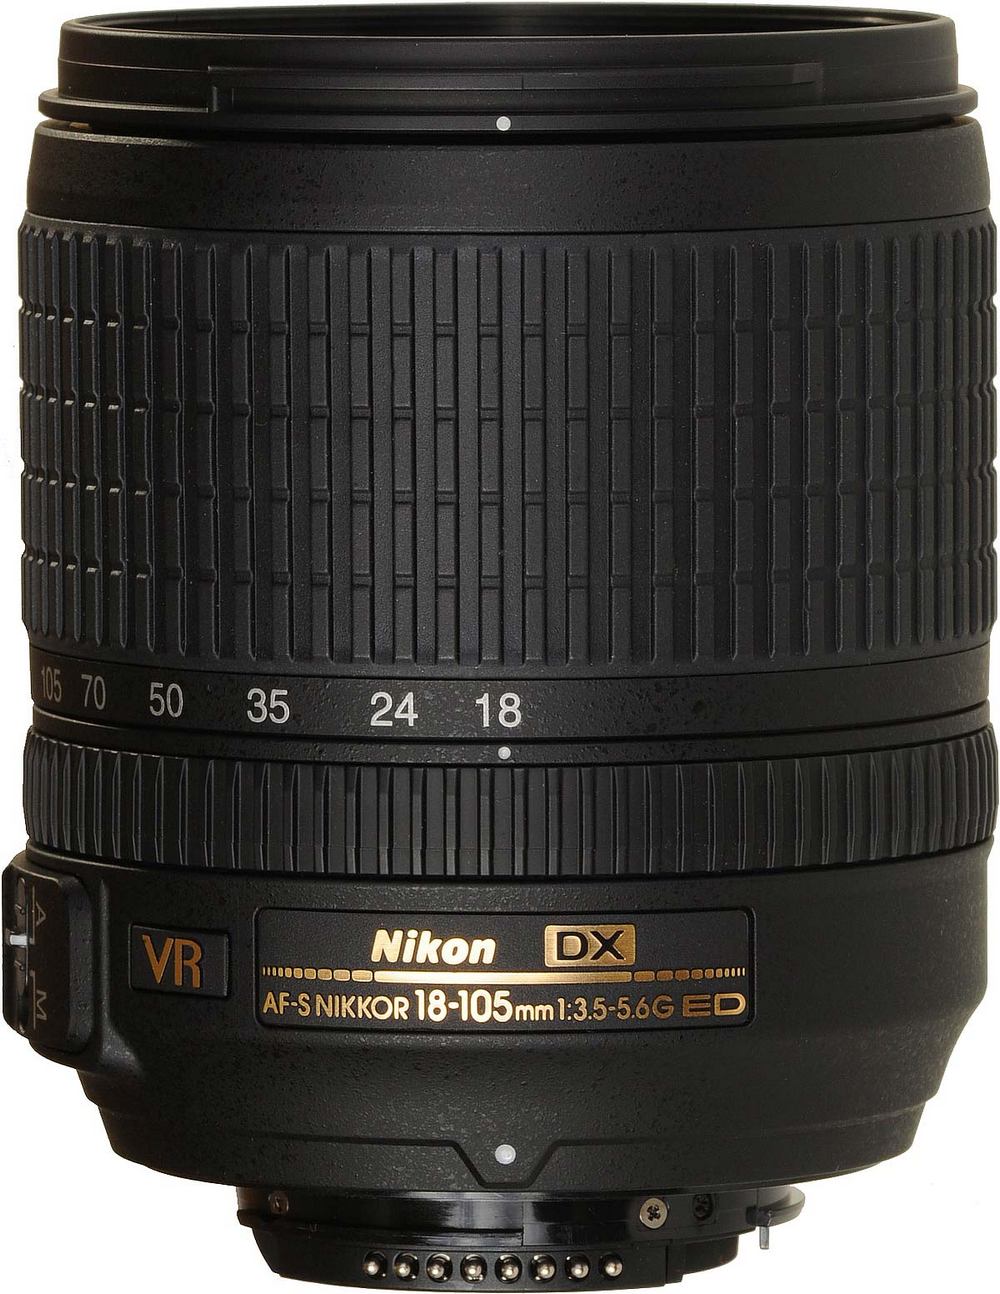 18 105mm f 4. Nikon 18-105mm f/3.5-5.6g af-s ed DX VR Nikkor. Nikon DX af s Nikkor 18 105mm. Nikon DX af-s Nikkor 18-55mm 1:3.5-5.6g ed. Nikon 18 200mm VR.